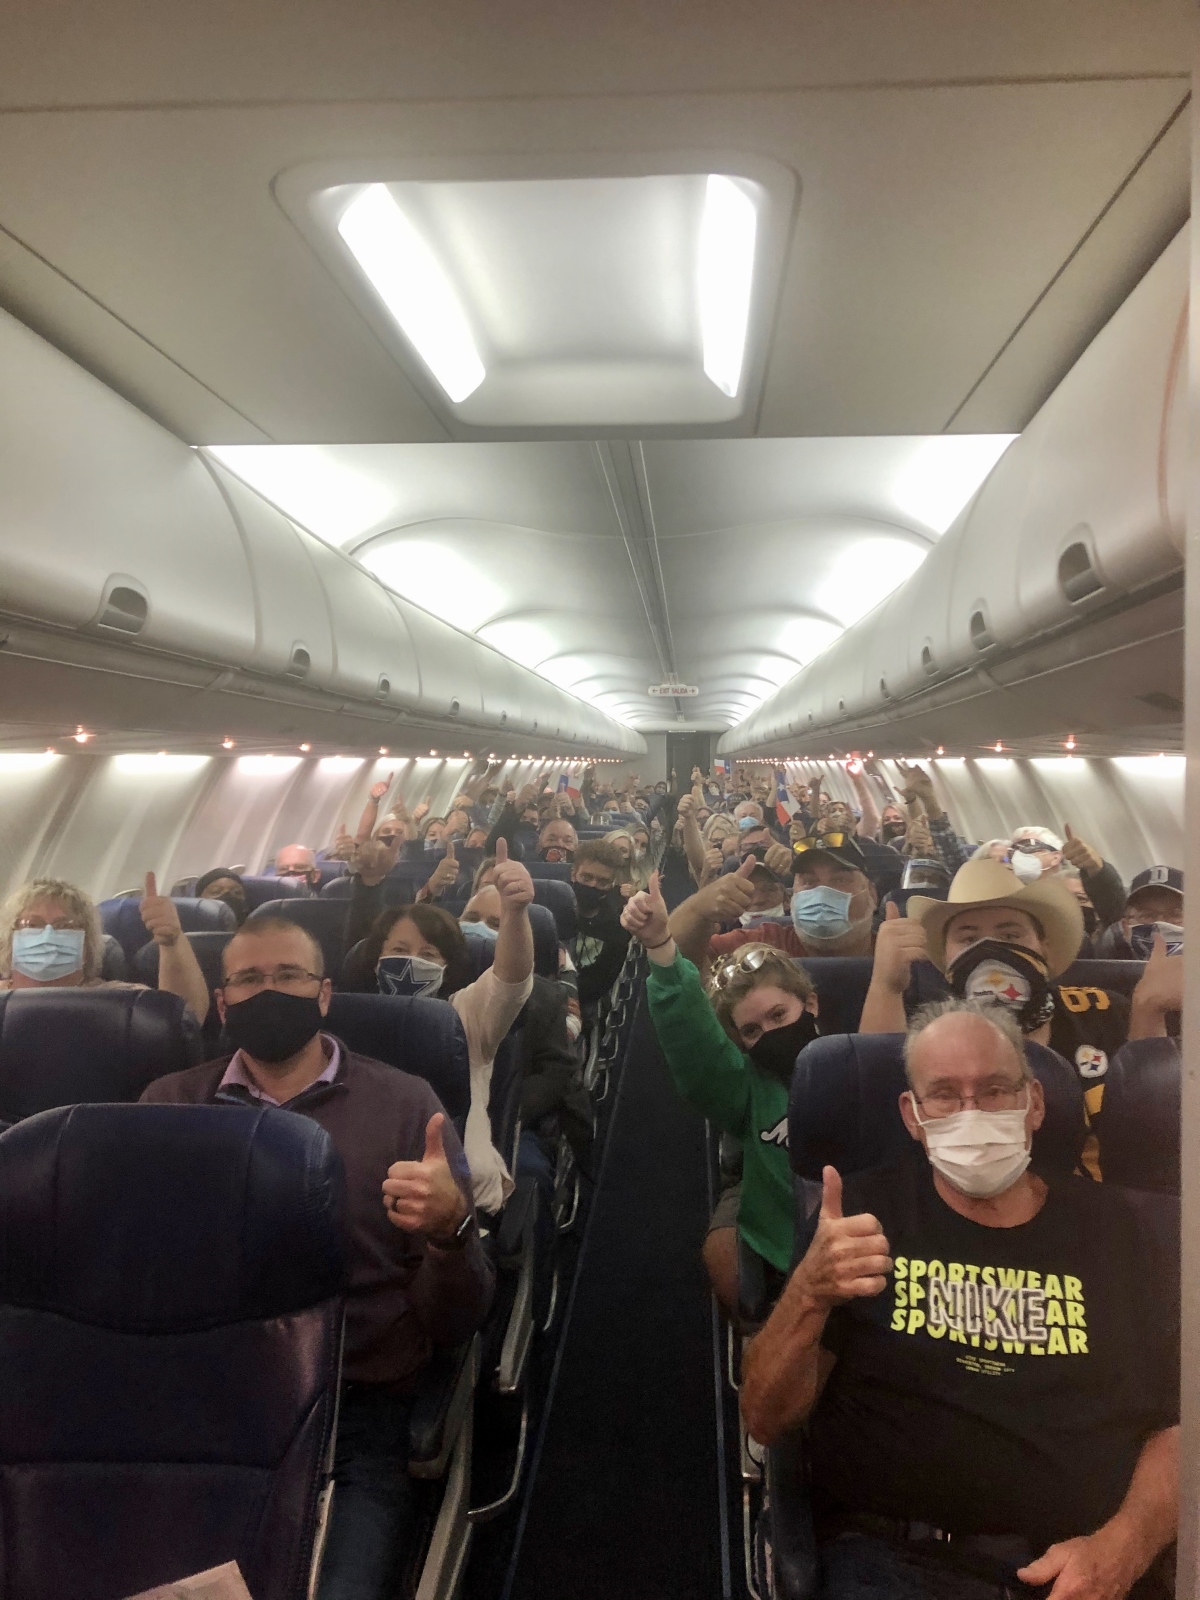 Plane full of passengers